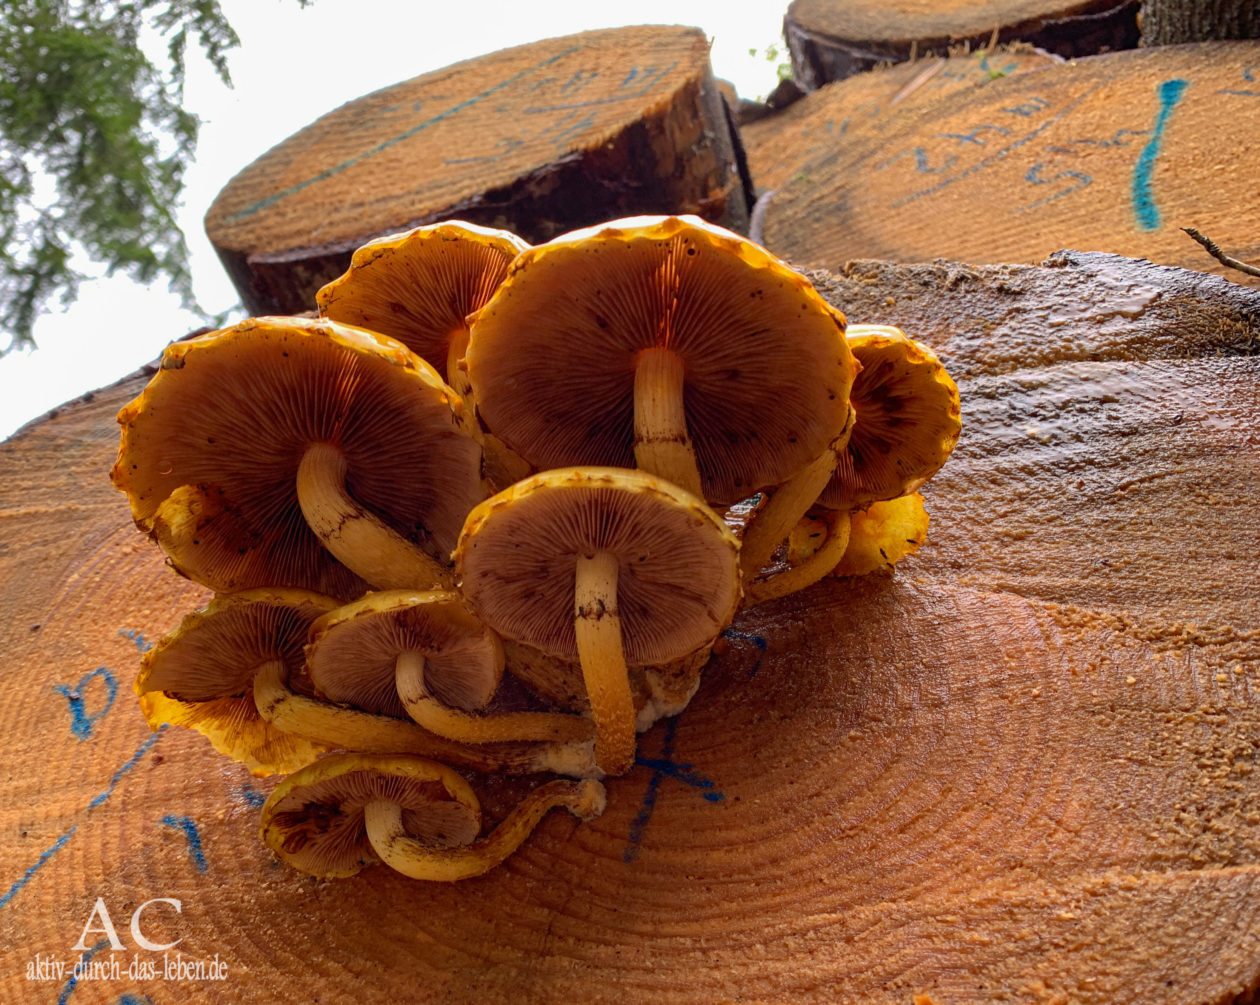 Hausbachklamm Wandertrilogie Pilze am Baum